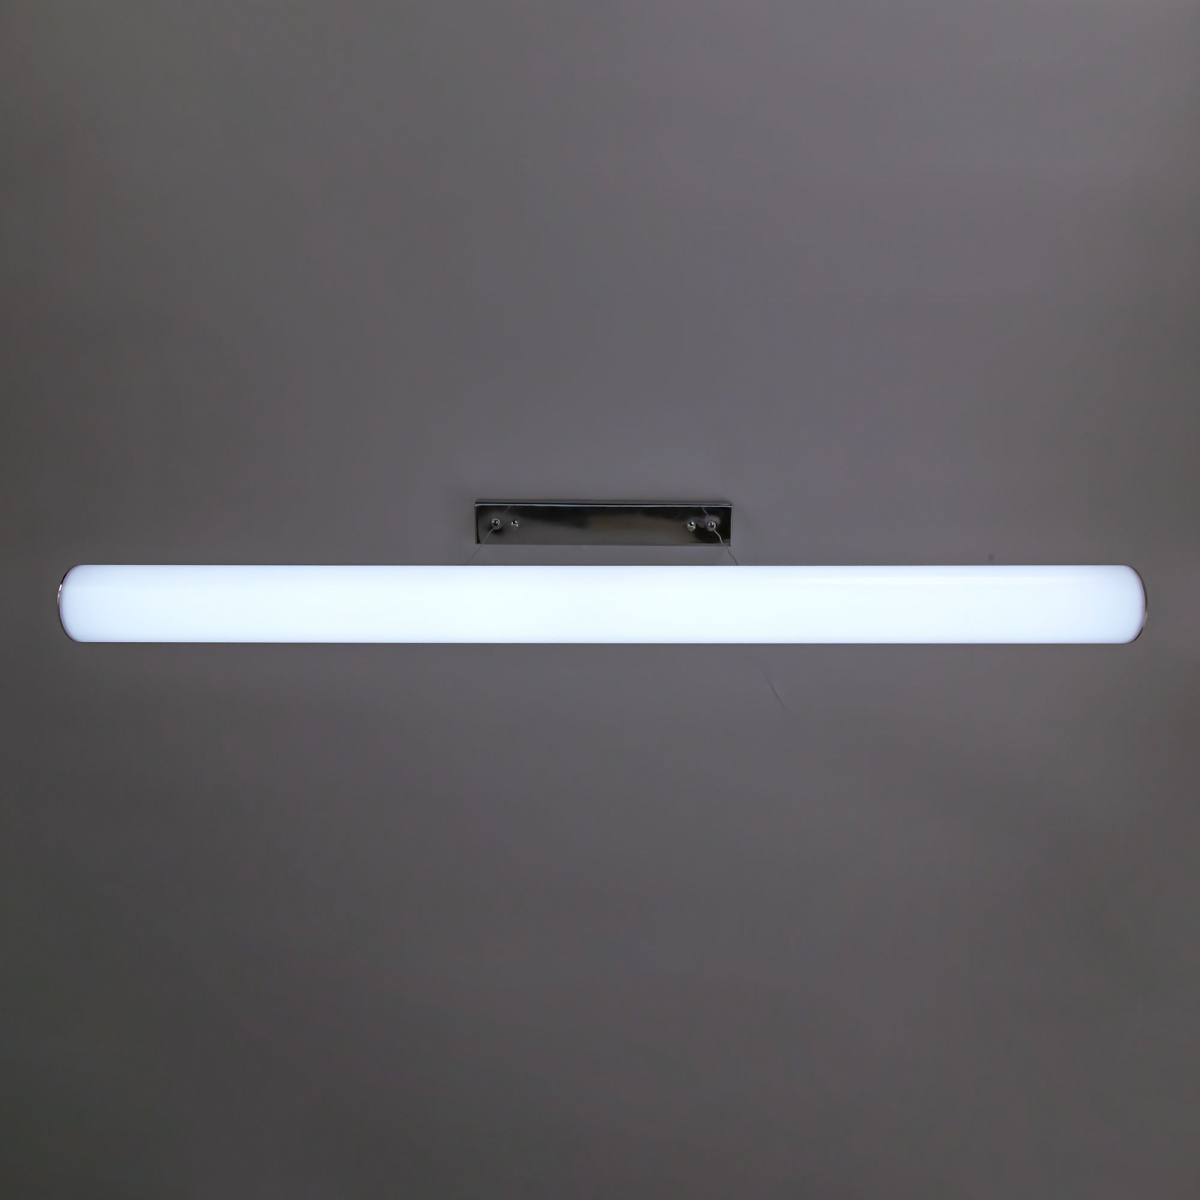 подвесной светильник citilux фауст (faust), артикул CL721P36N